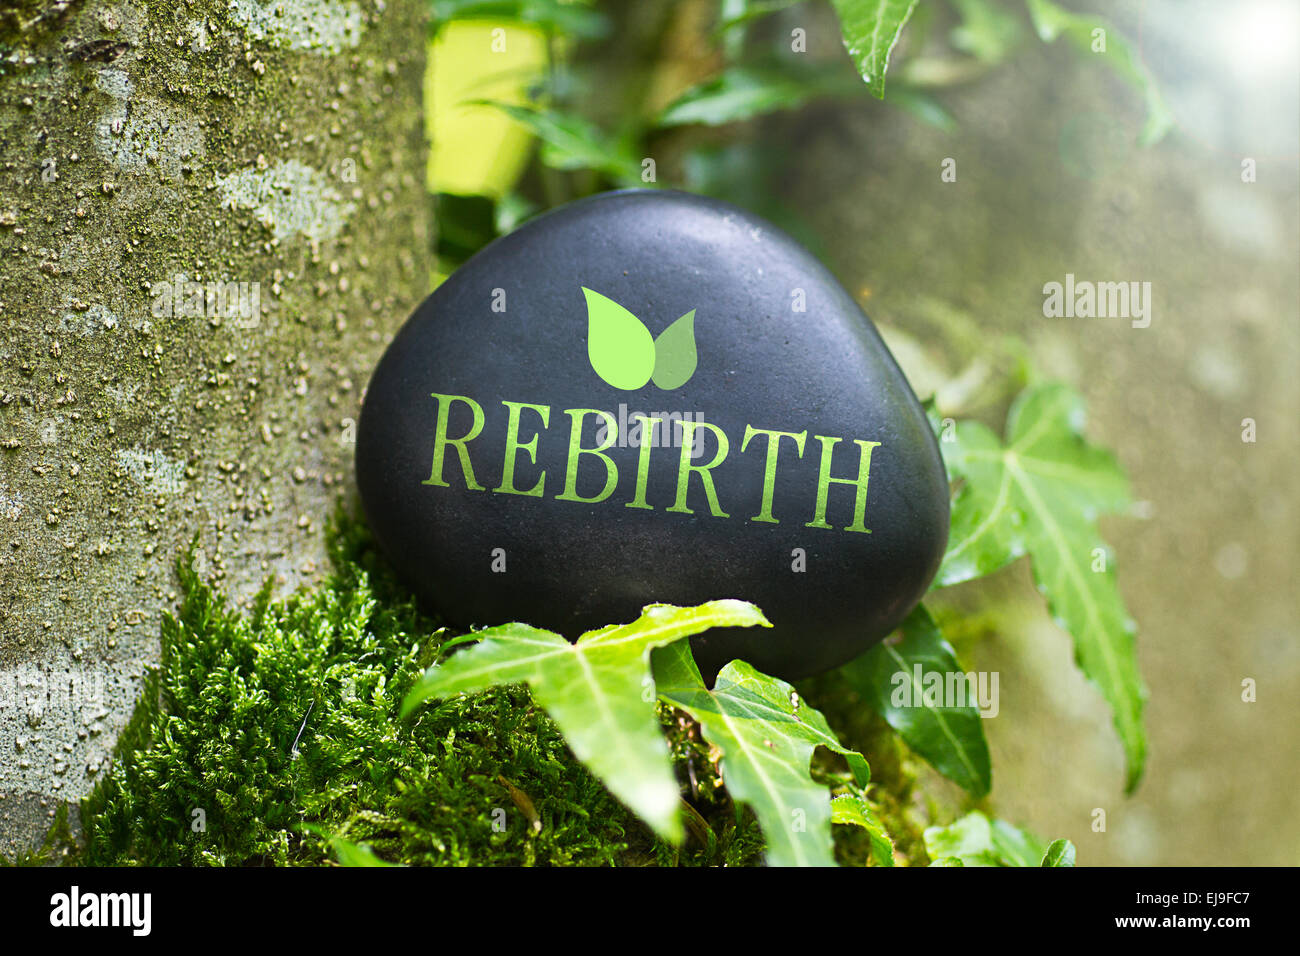 Das Wort "Rebirth" auf einem Stein in der Natur Stockfoto